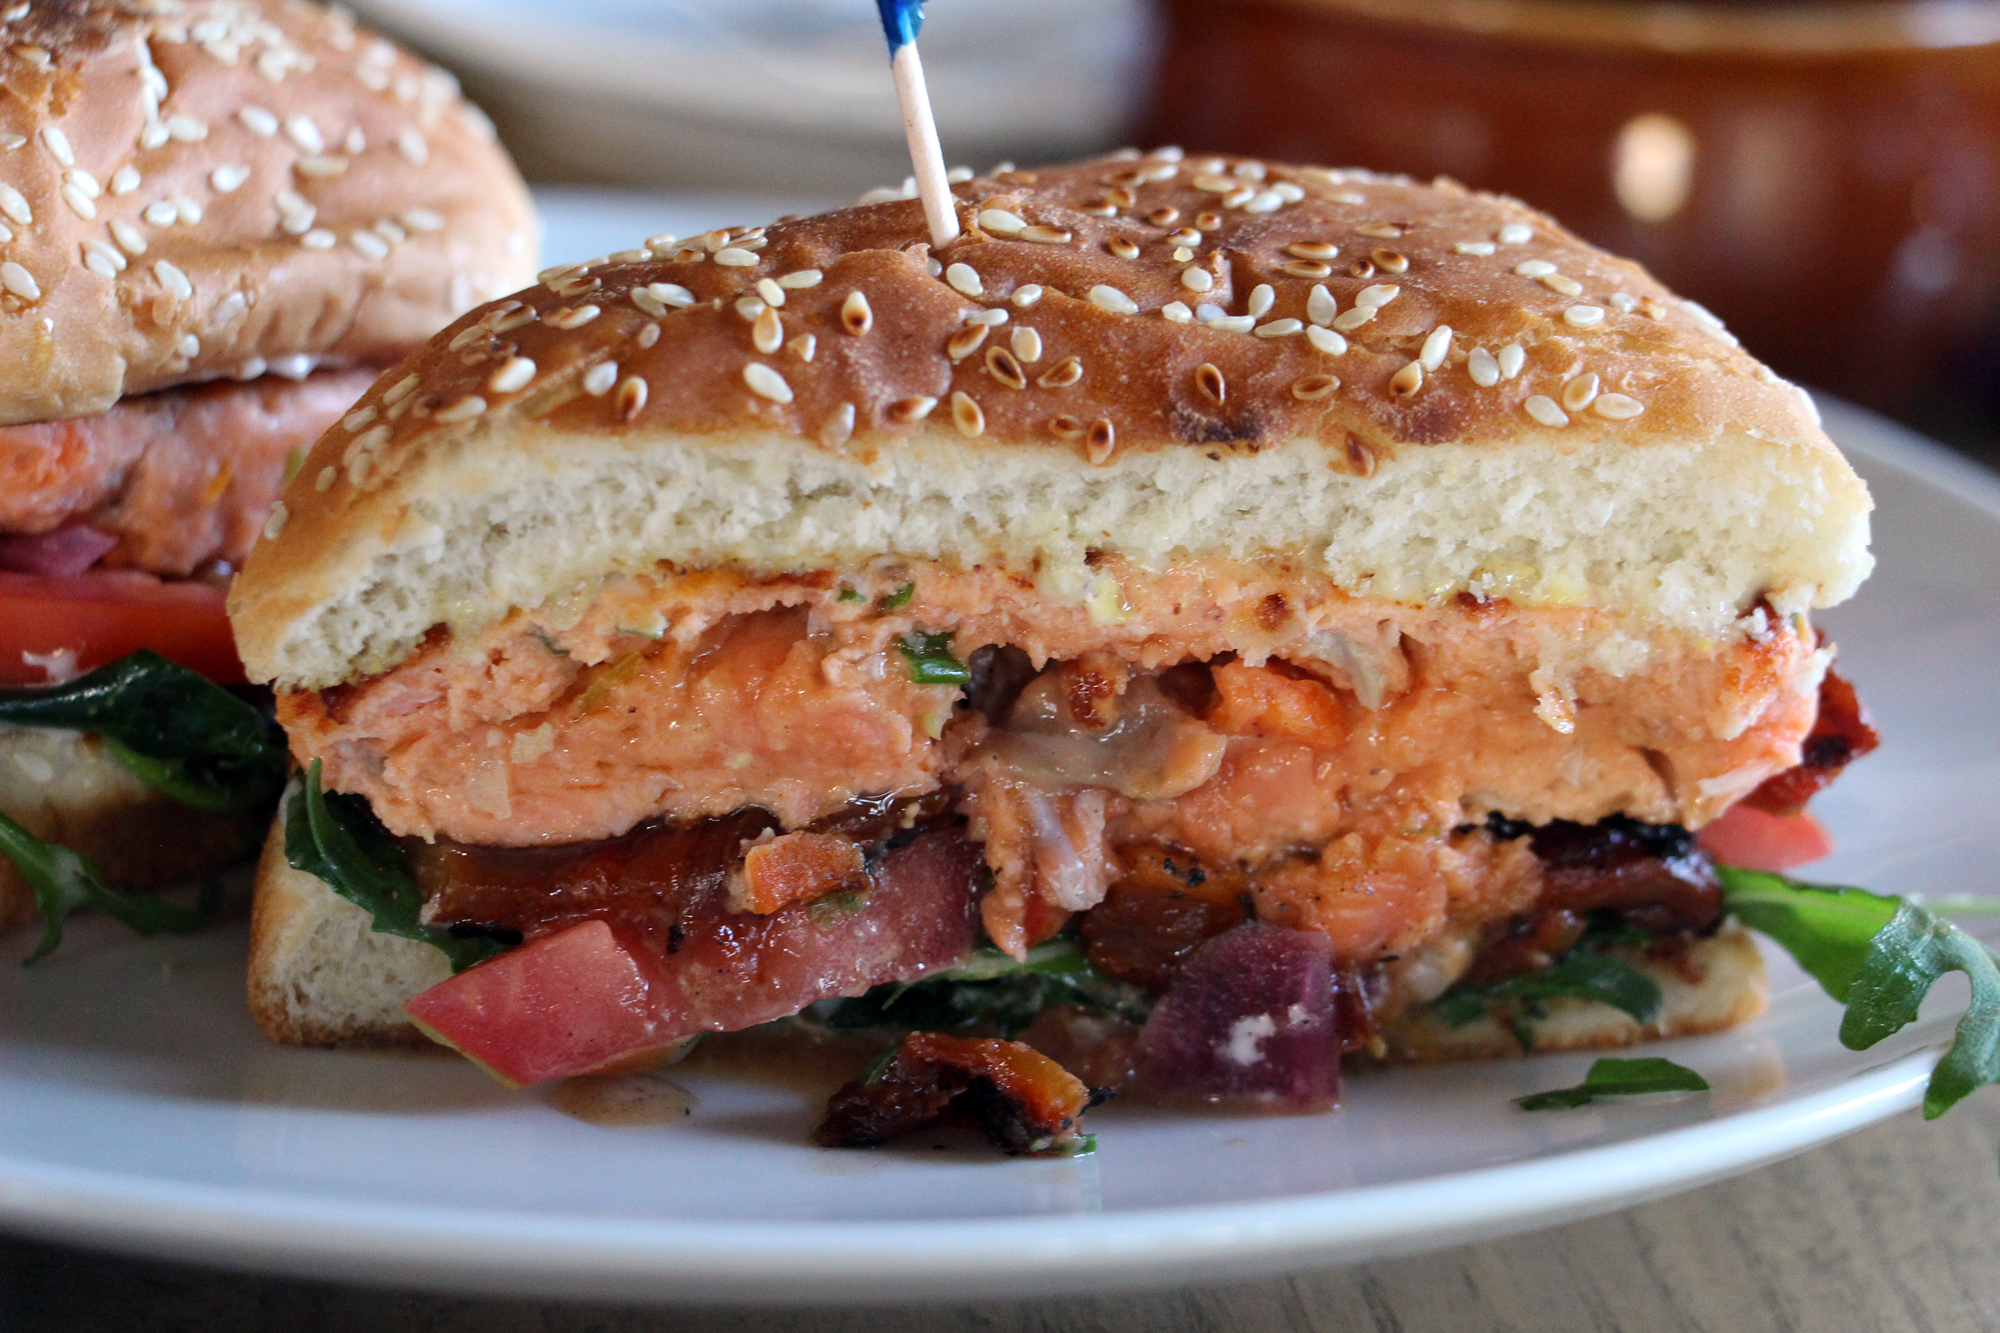 The Saha wild salmon burger.